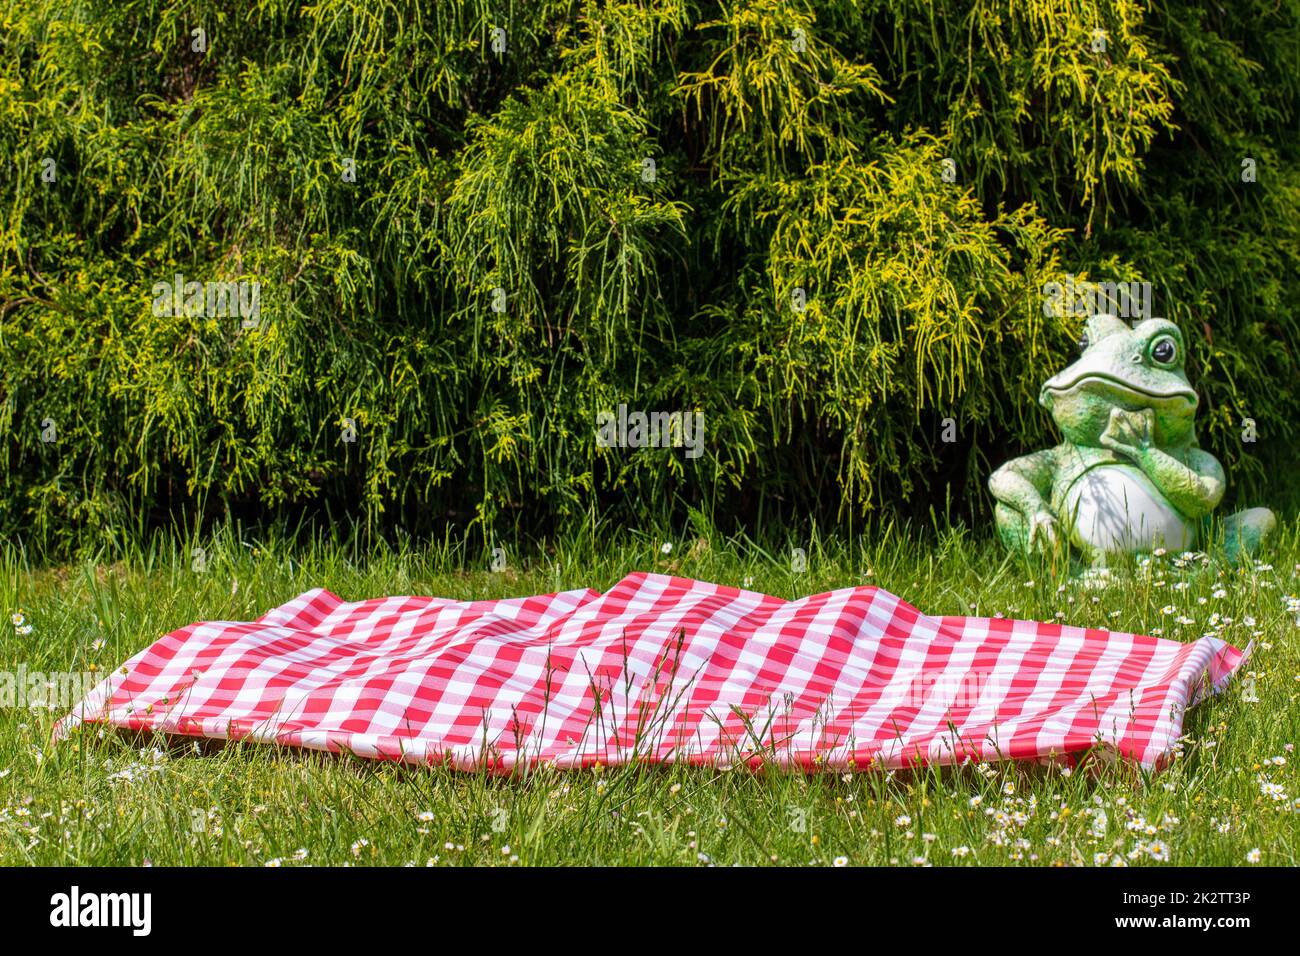 Rotes Picknicktuch. Rote karierte Picknickdecke auf einer Wiese mit blühenden Gänseblümchen. Schöner Hintergrund für die Produktplatzierung oder -Montage. Frosch im Hintergrund. Stockfoto